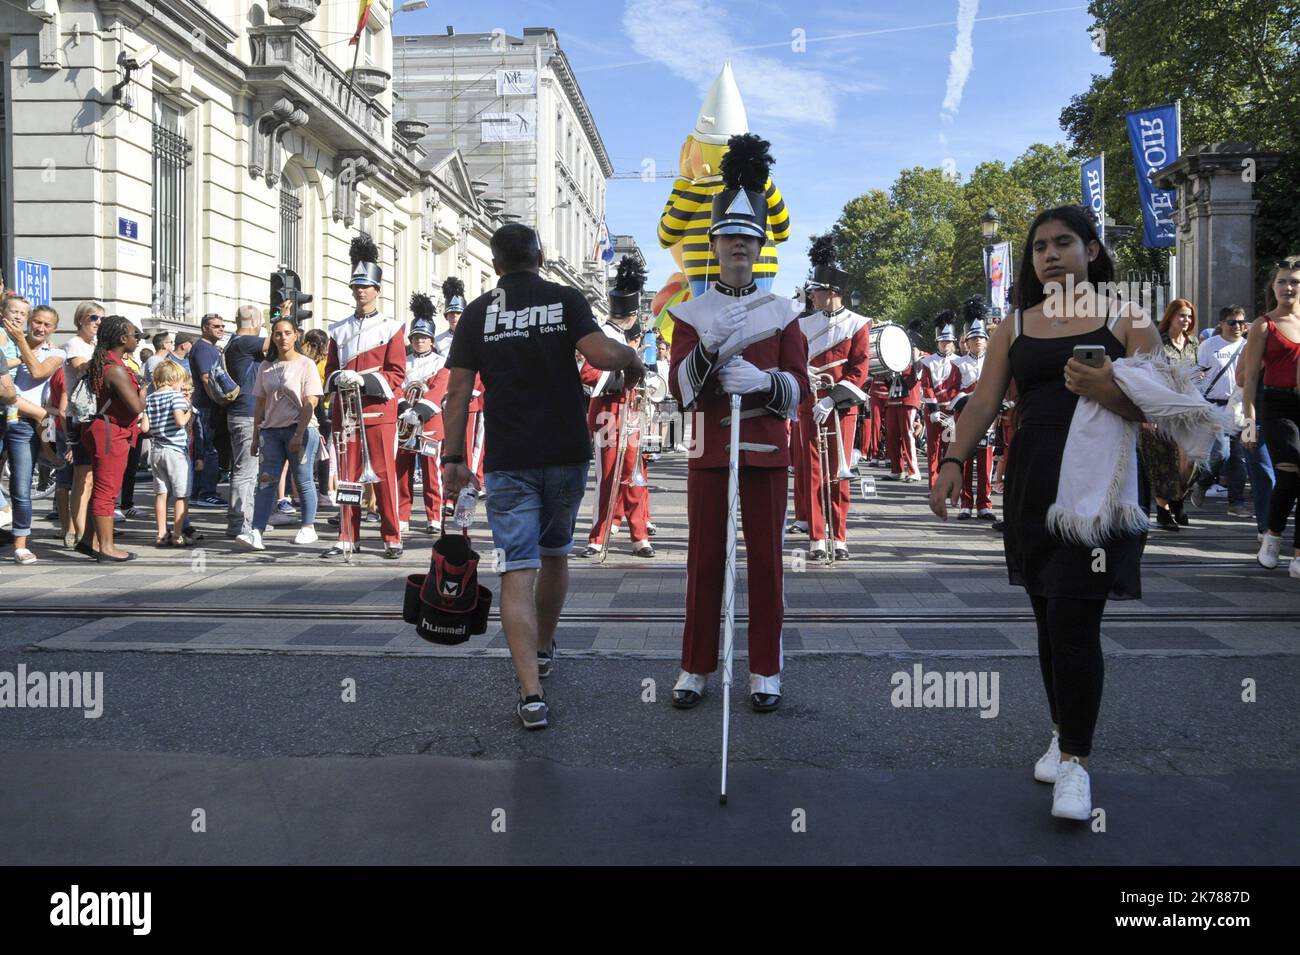 Este domingo tuvo lugar en Bruselas como parte del Festival del Cómic, un desfile de globos gigantes con la efigie de varios personajes mundialmente famosos. Una gran multitud se había movido a seguir el cortejo y también admiraba a Darth Vader y sus tropas o las diversas fanfarrias que animaron el desfile. Foto de stock